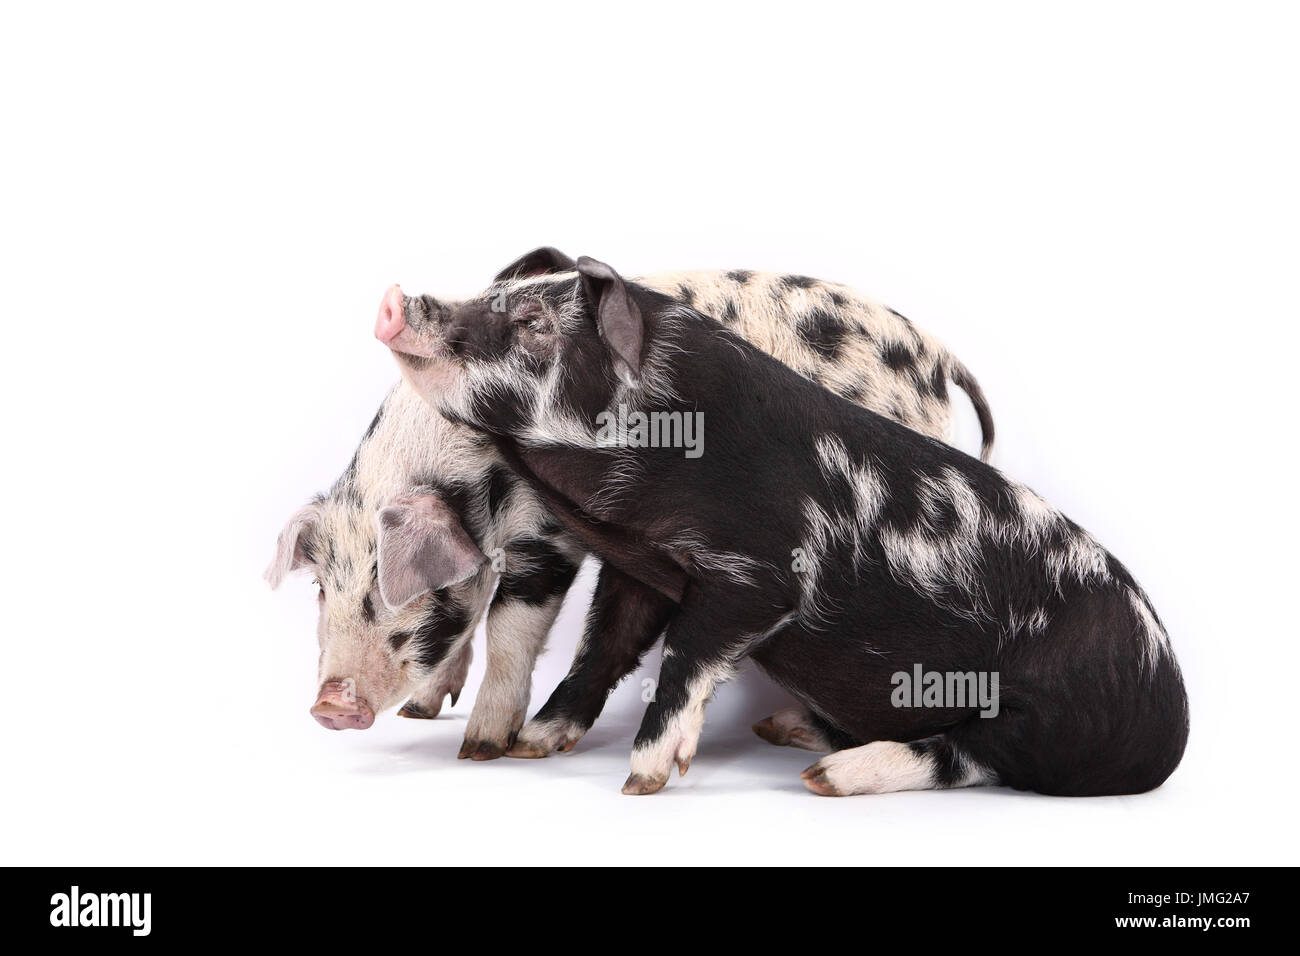 Turopolje maiale. Due porcellini: uno in piedi, una sola seduta. Studio Immagine contro uno sfondo bianco. Germania Foto Stock